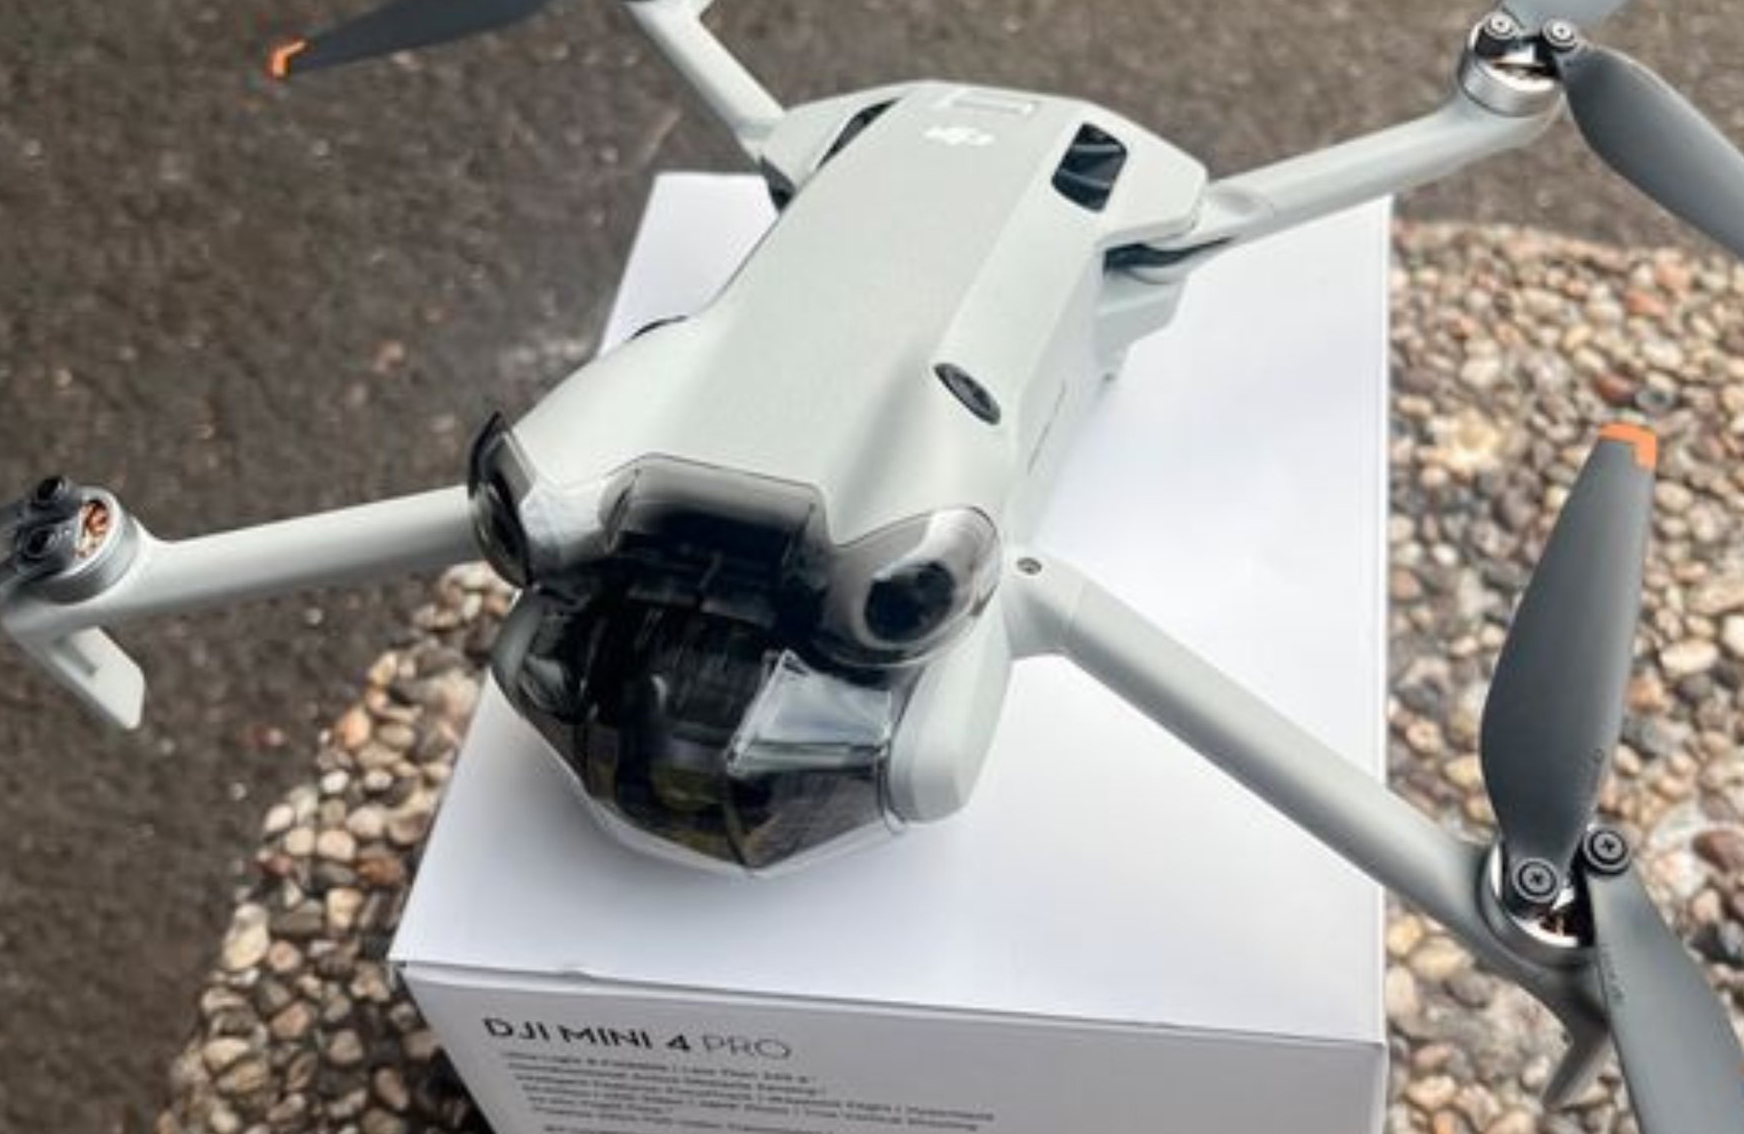 DJI Announces Mini 4 Pro Drone, Upgraded DJI Mini Series; Learn